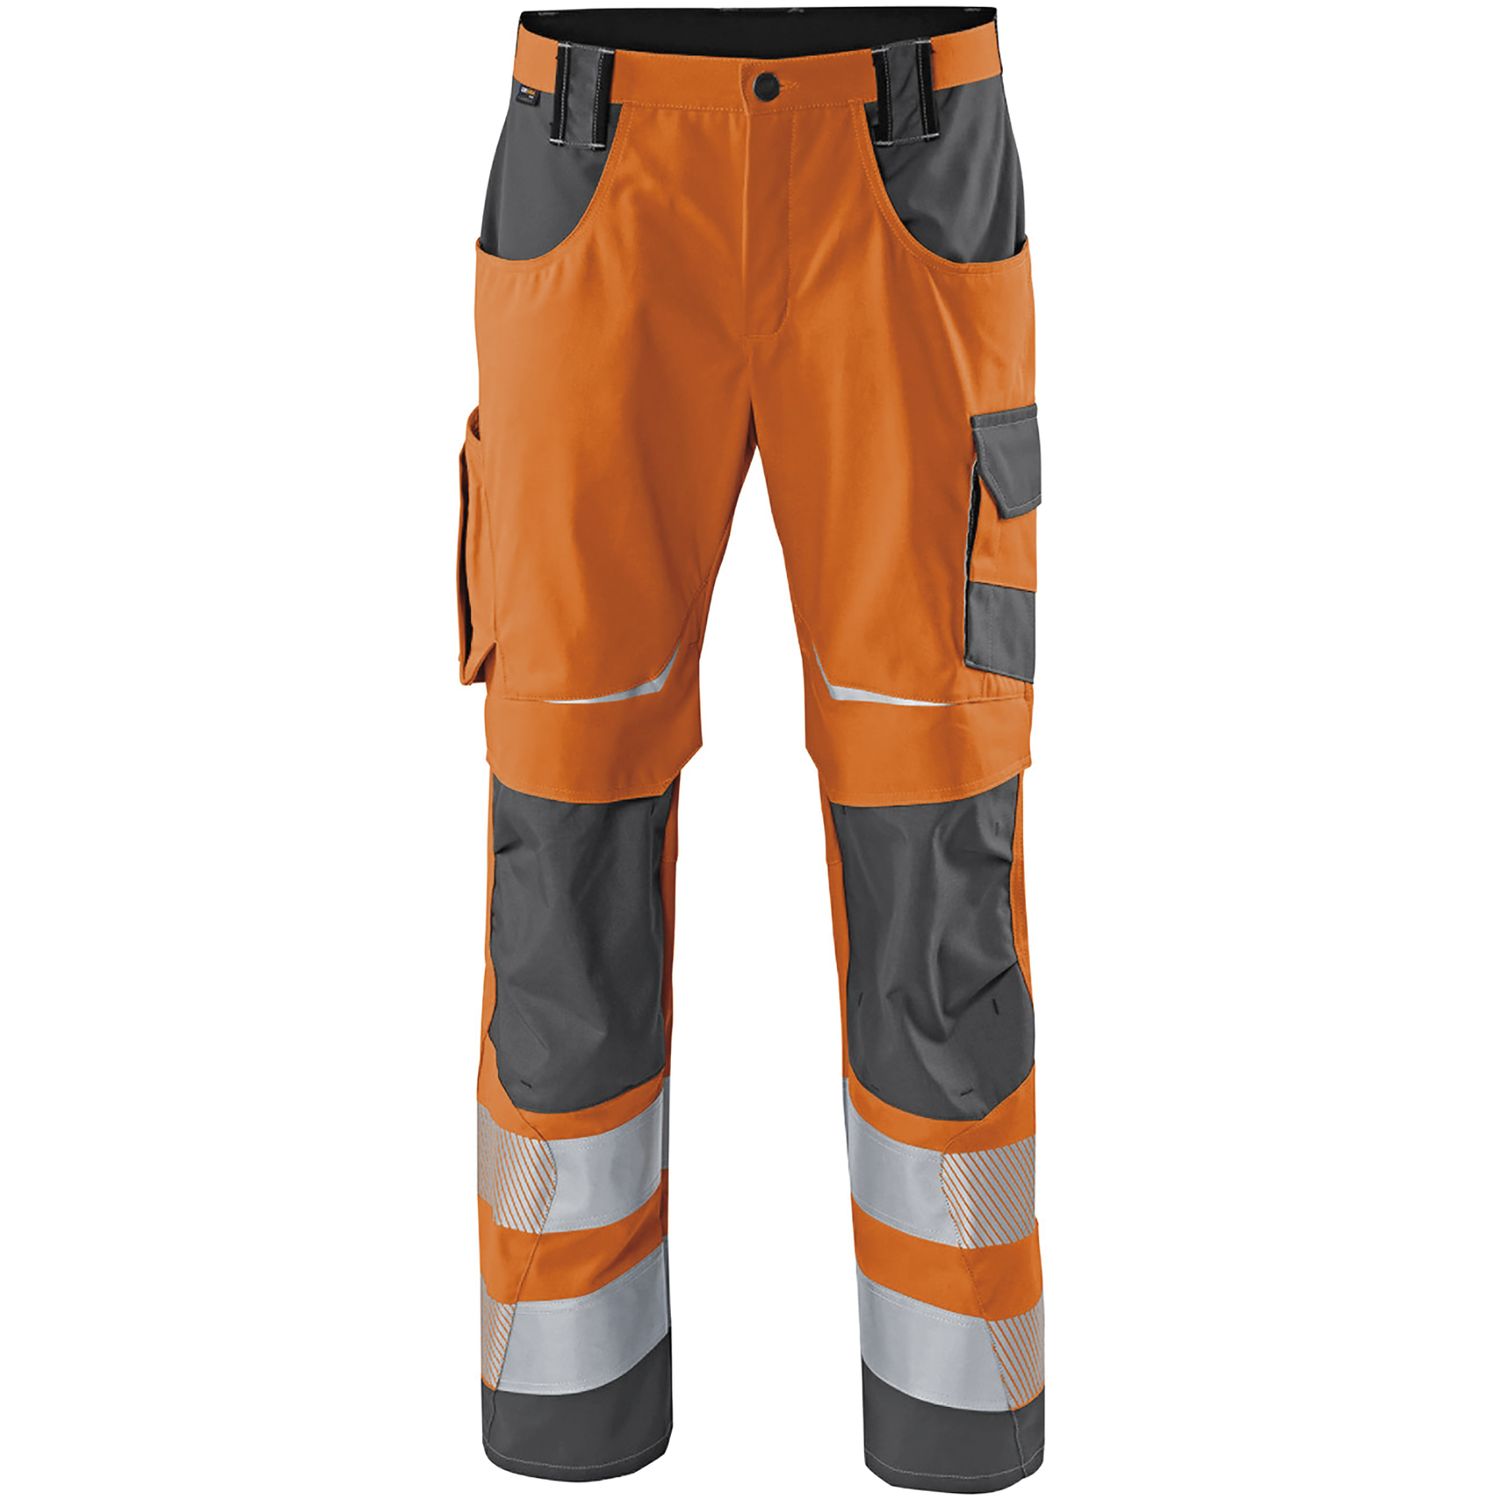 Warnschutzhose 2 Reflectiq orange/grau 52 KÜBLER Klasse